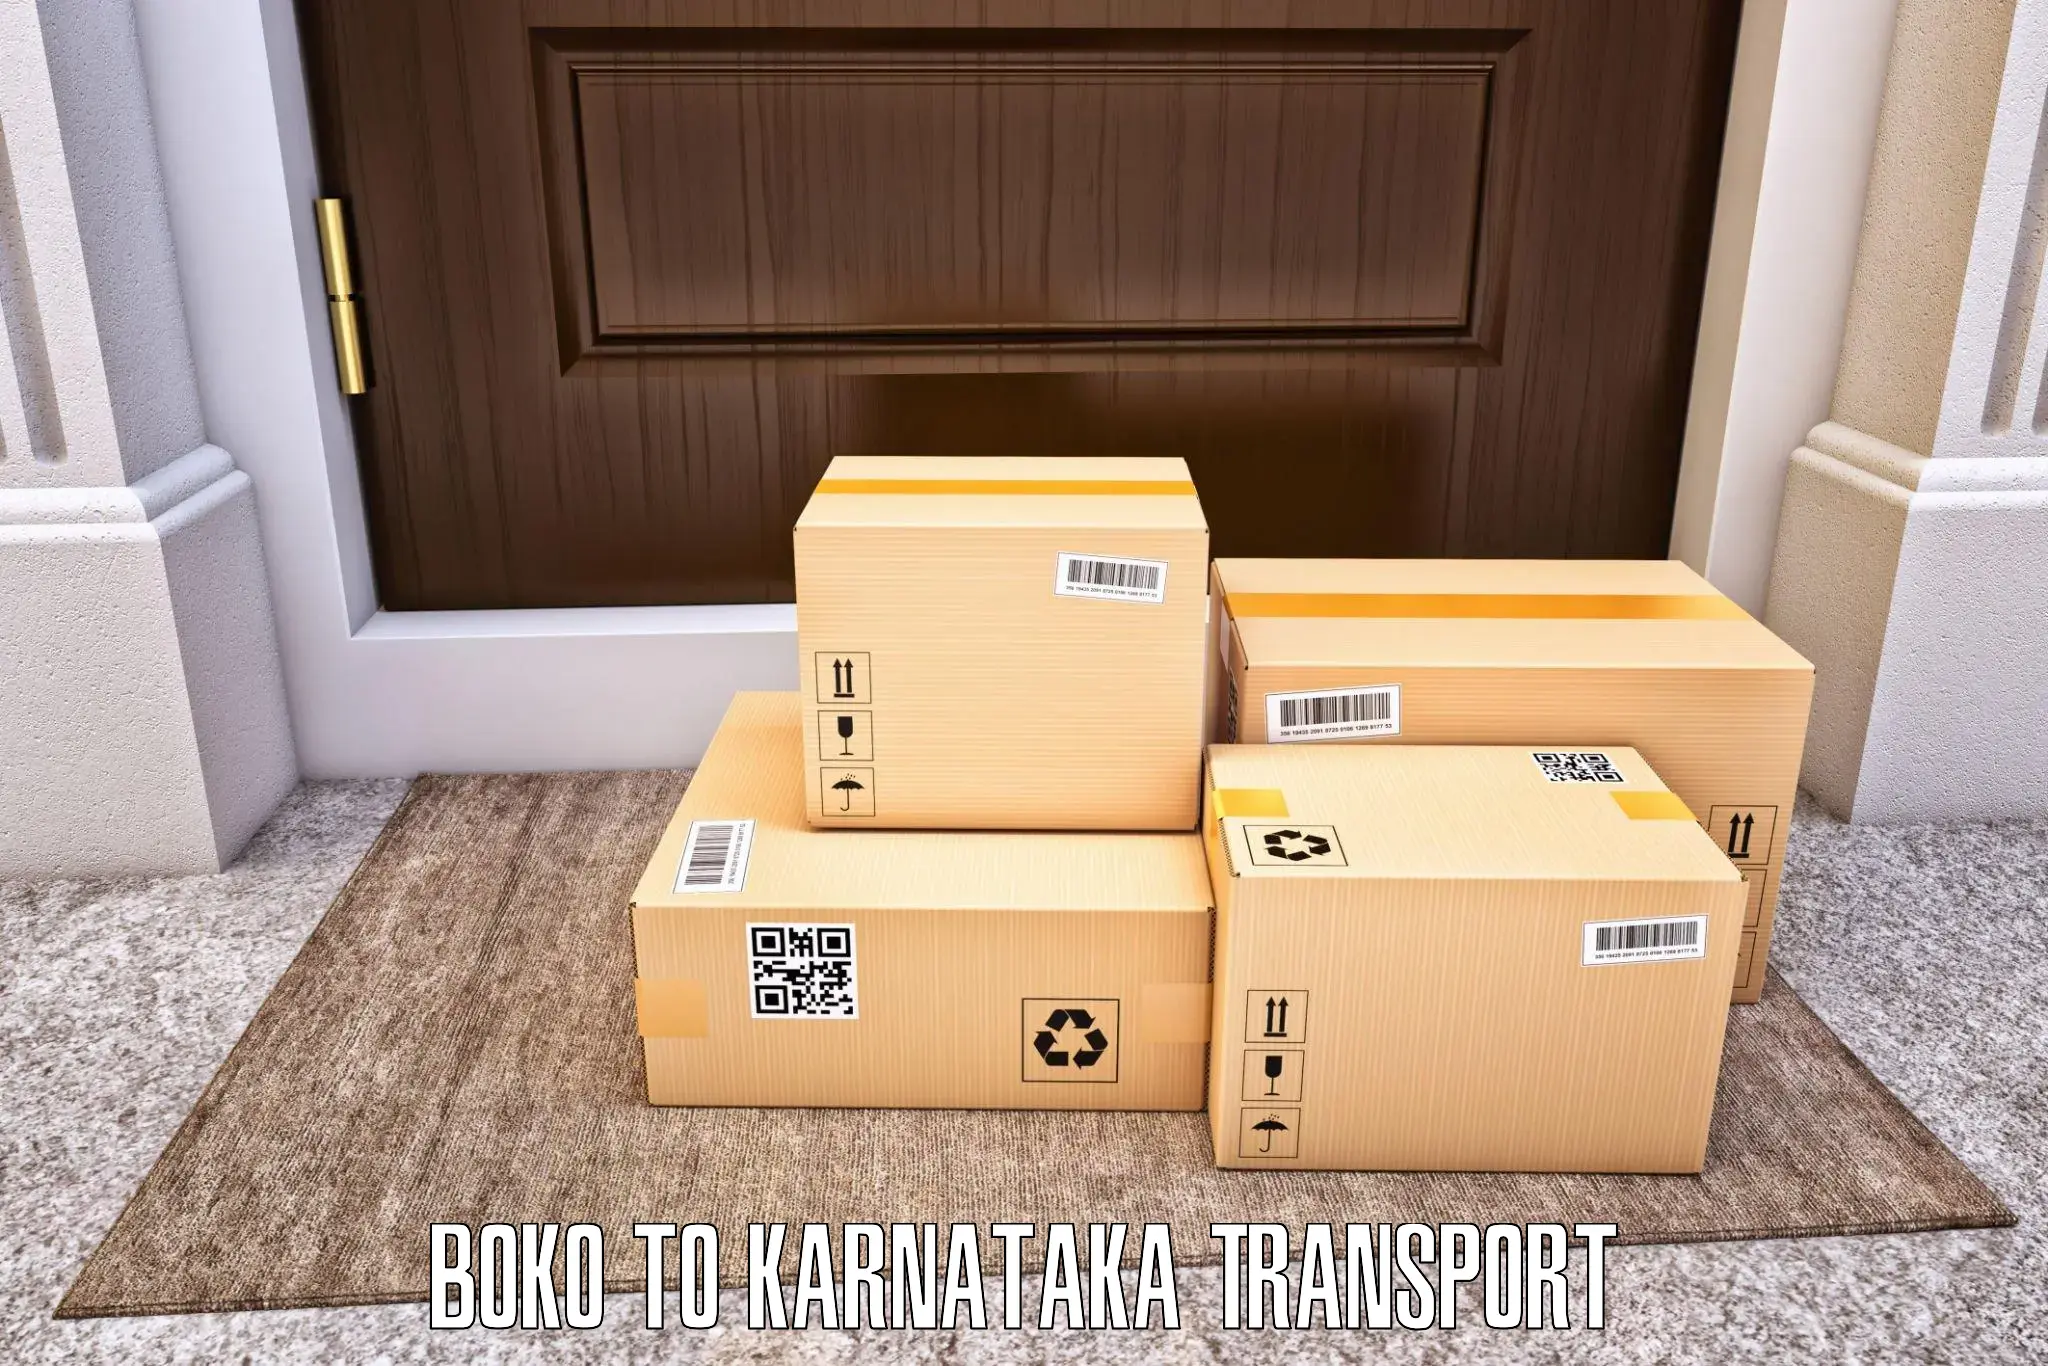 Two wheeler parcel service Boko to Kanakapura